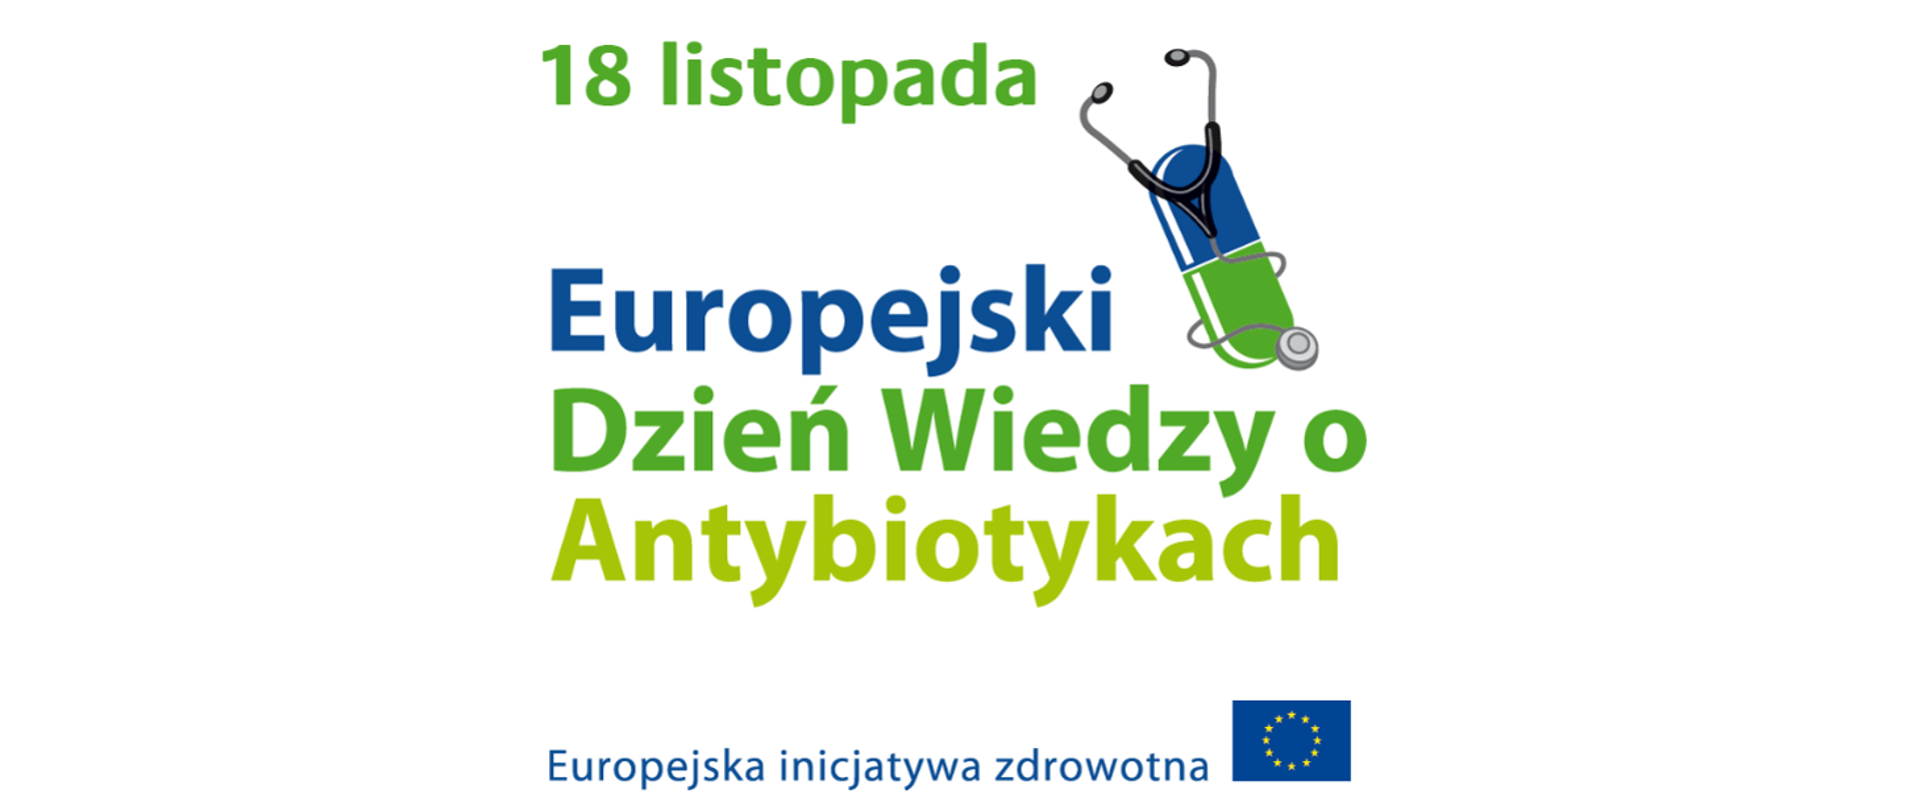 Europejski Dzień wiedzy o Antybiotykach